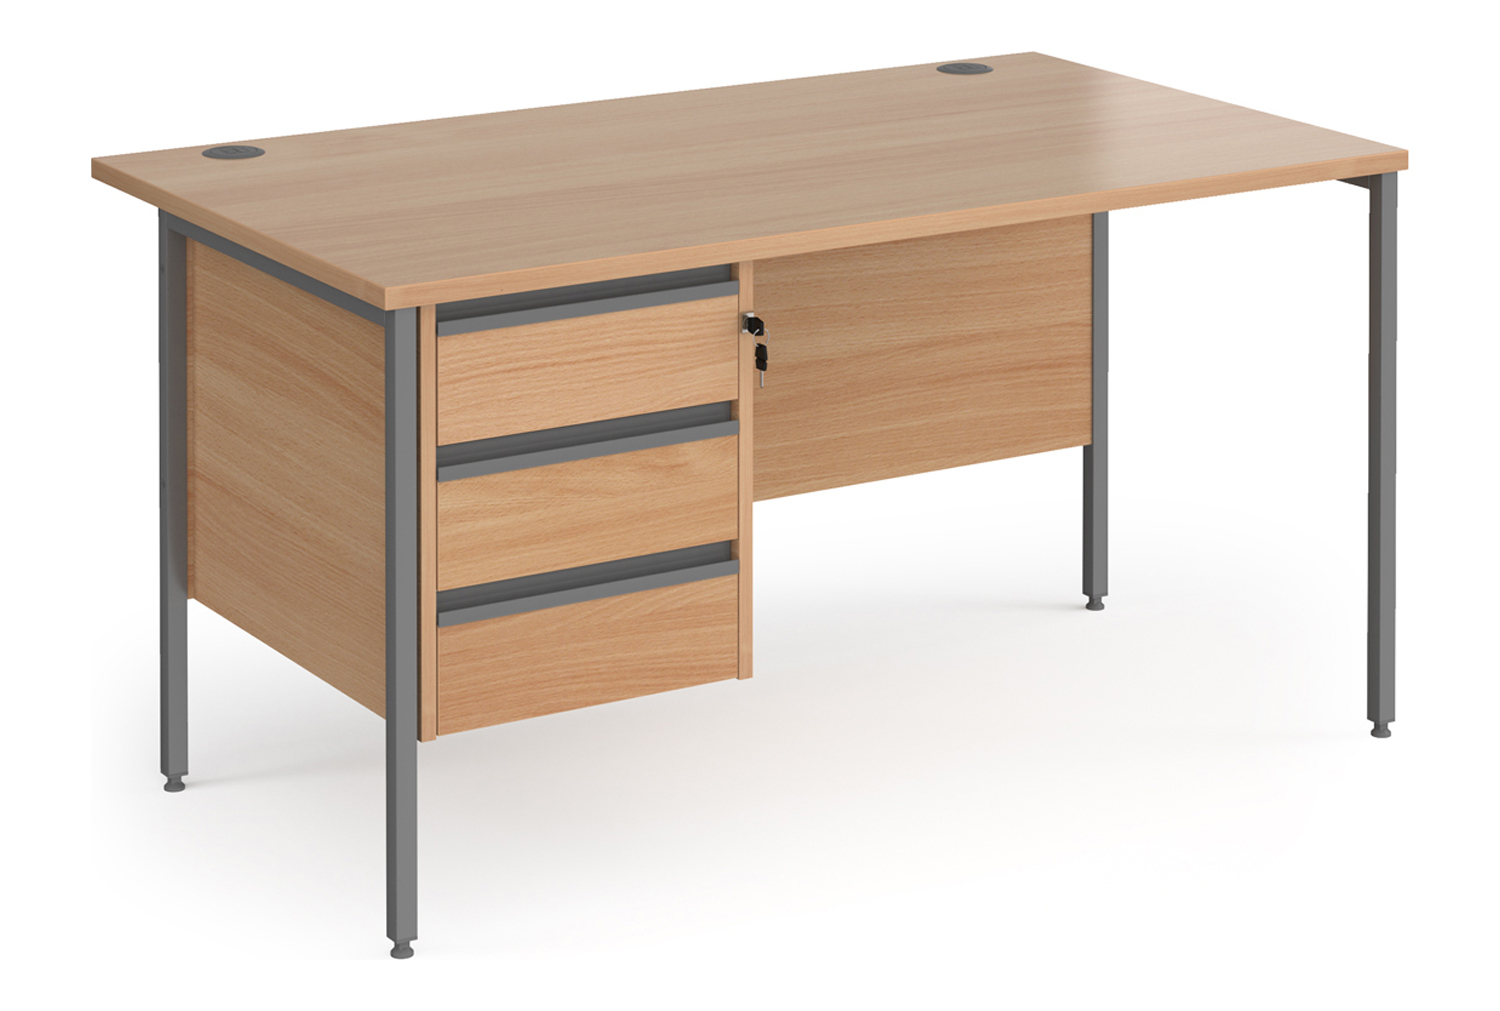 Value Line Classic+ Rectangular H-Leg Office Desk 3 Drawers (Graphite Leg), 140wx80dx73h (cm), Beech, Fully Installed